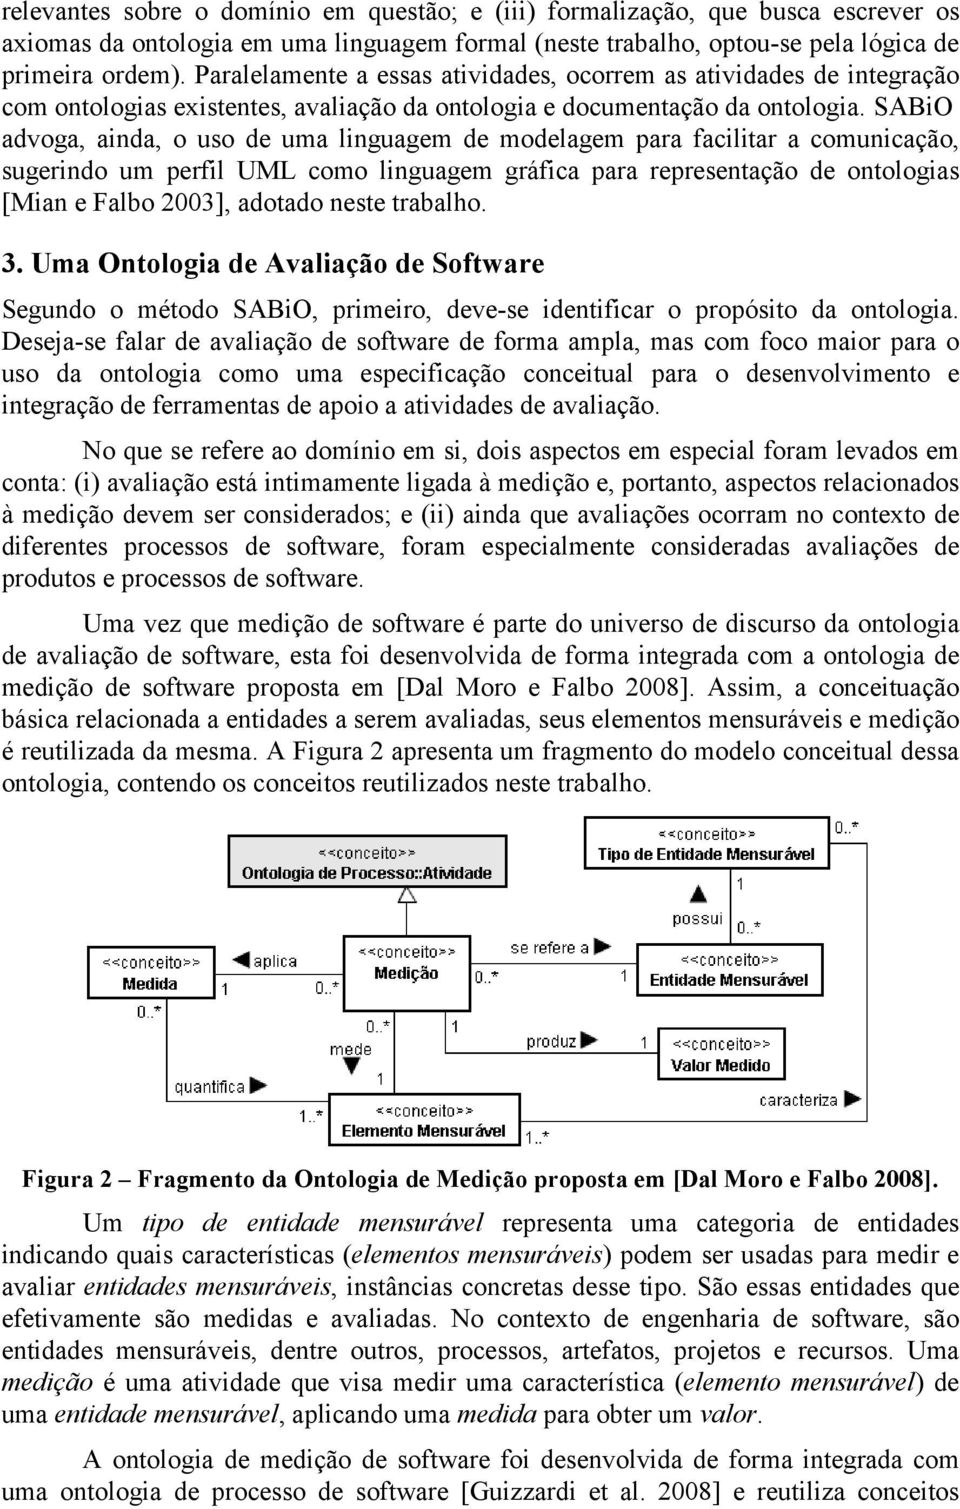 SABiO advoga, ainda, o uso de uma linguagem de modelagem para facilitar a comunicação, sugerindo um perfil UML como linguagem gráfica para representação de ontologias [Mian e Falbo 2003], adotado